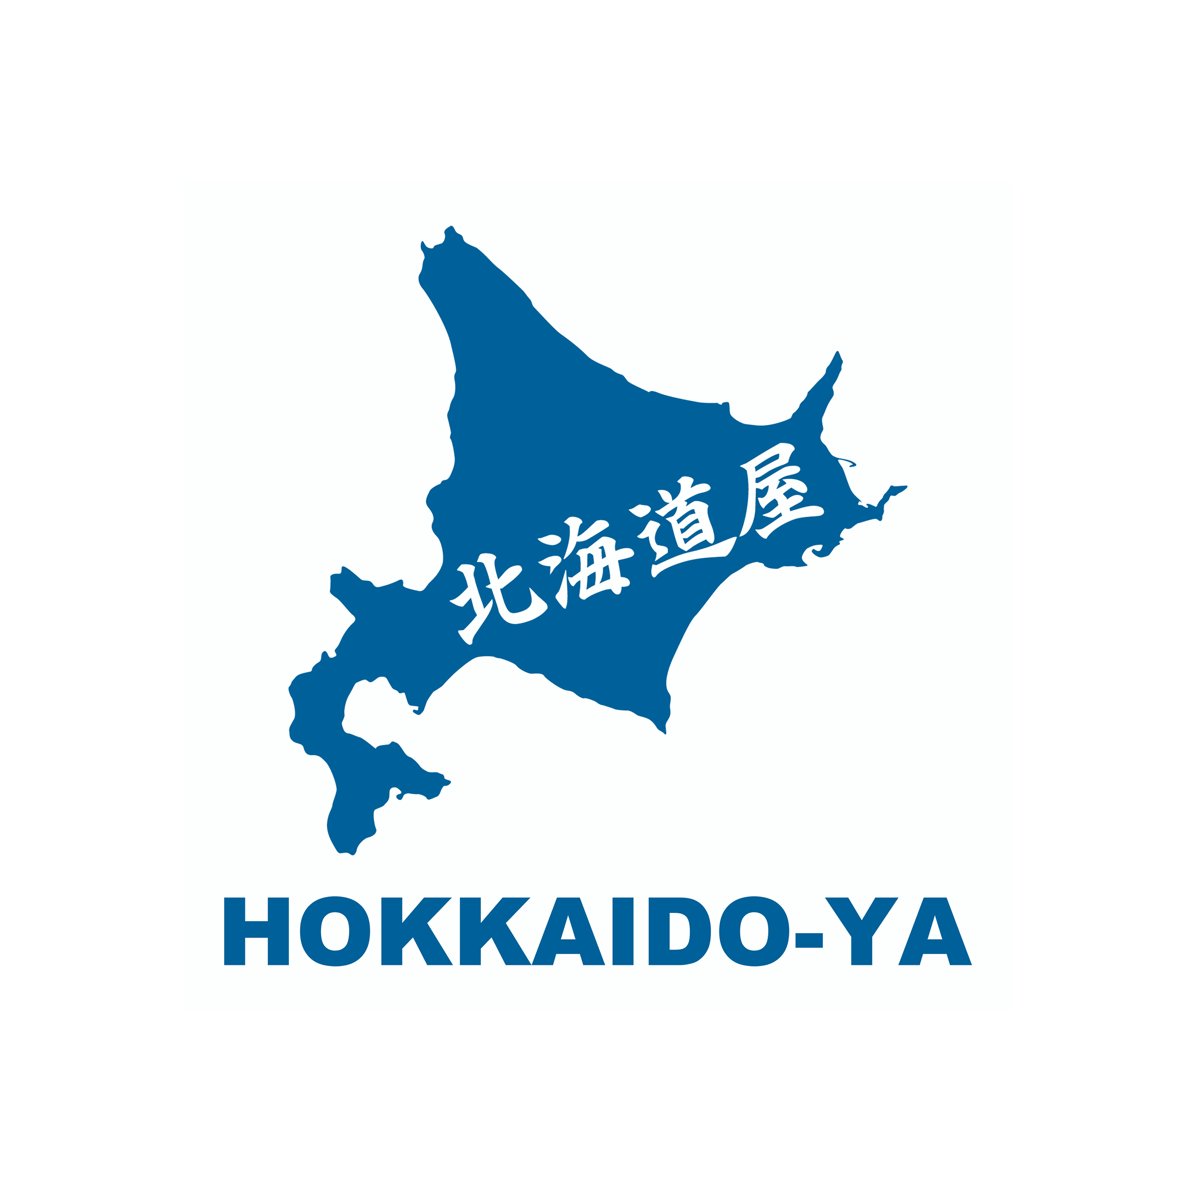 Hokkaido-ya - Logo